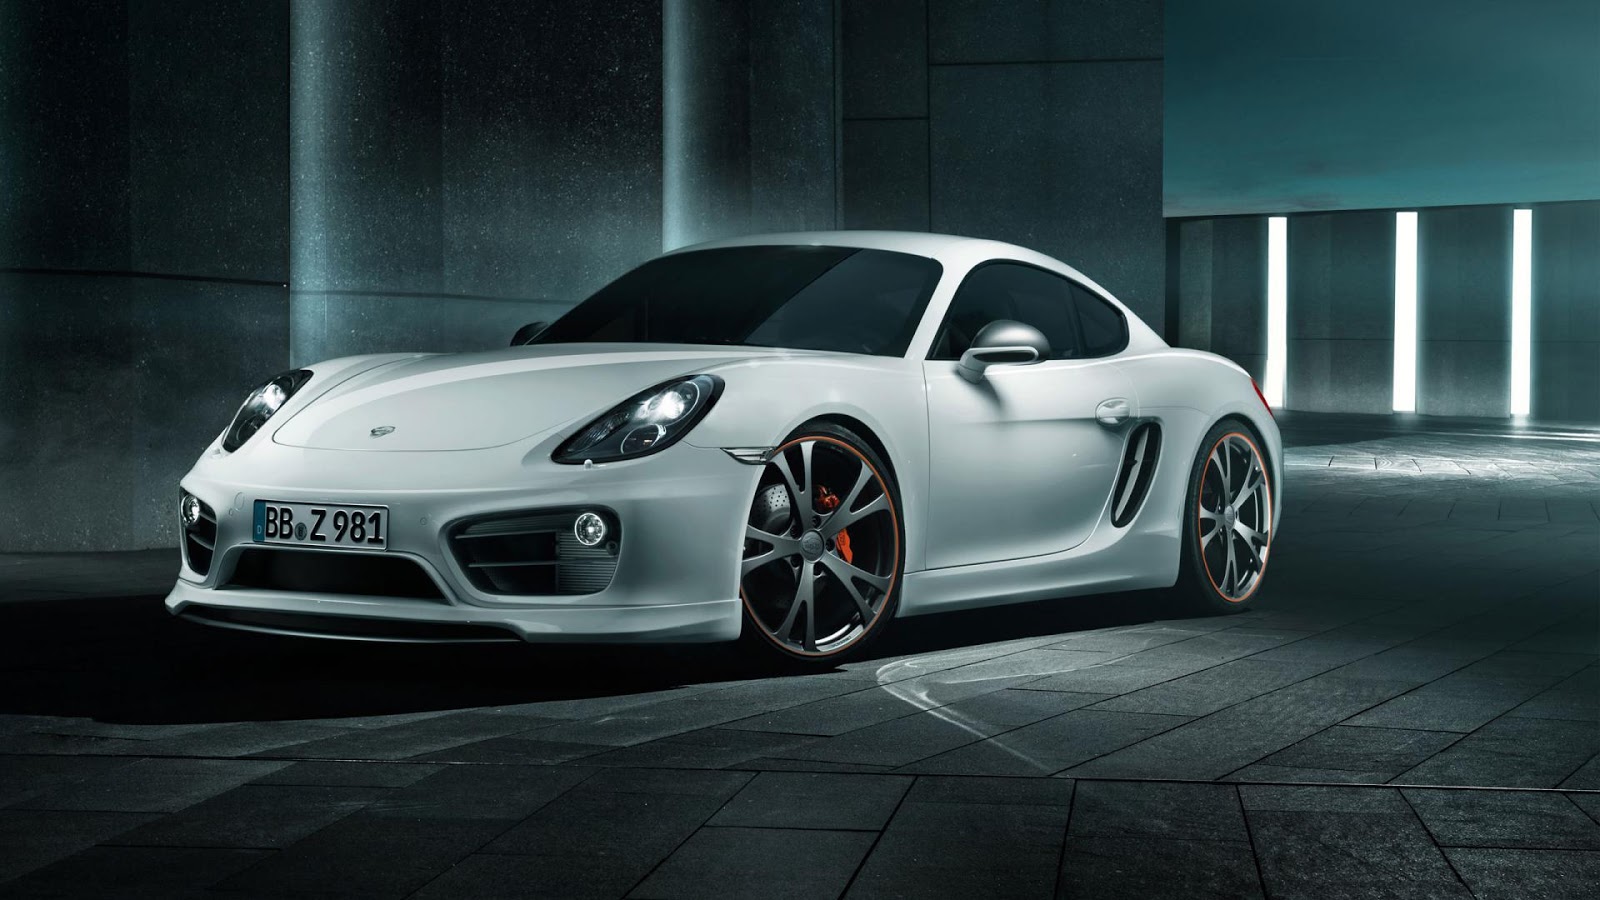 Porsche Cayman Hd , HD Wallpaper & Backgrounds